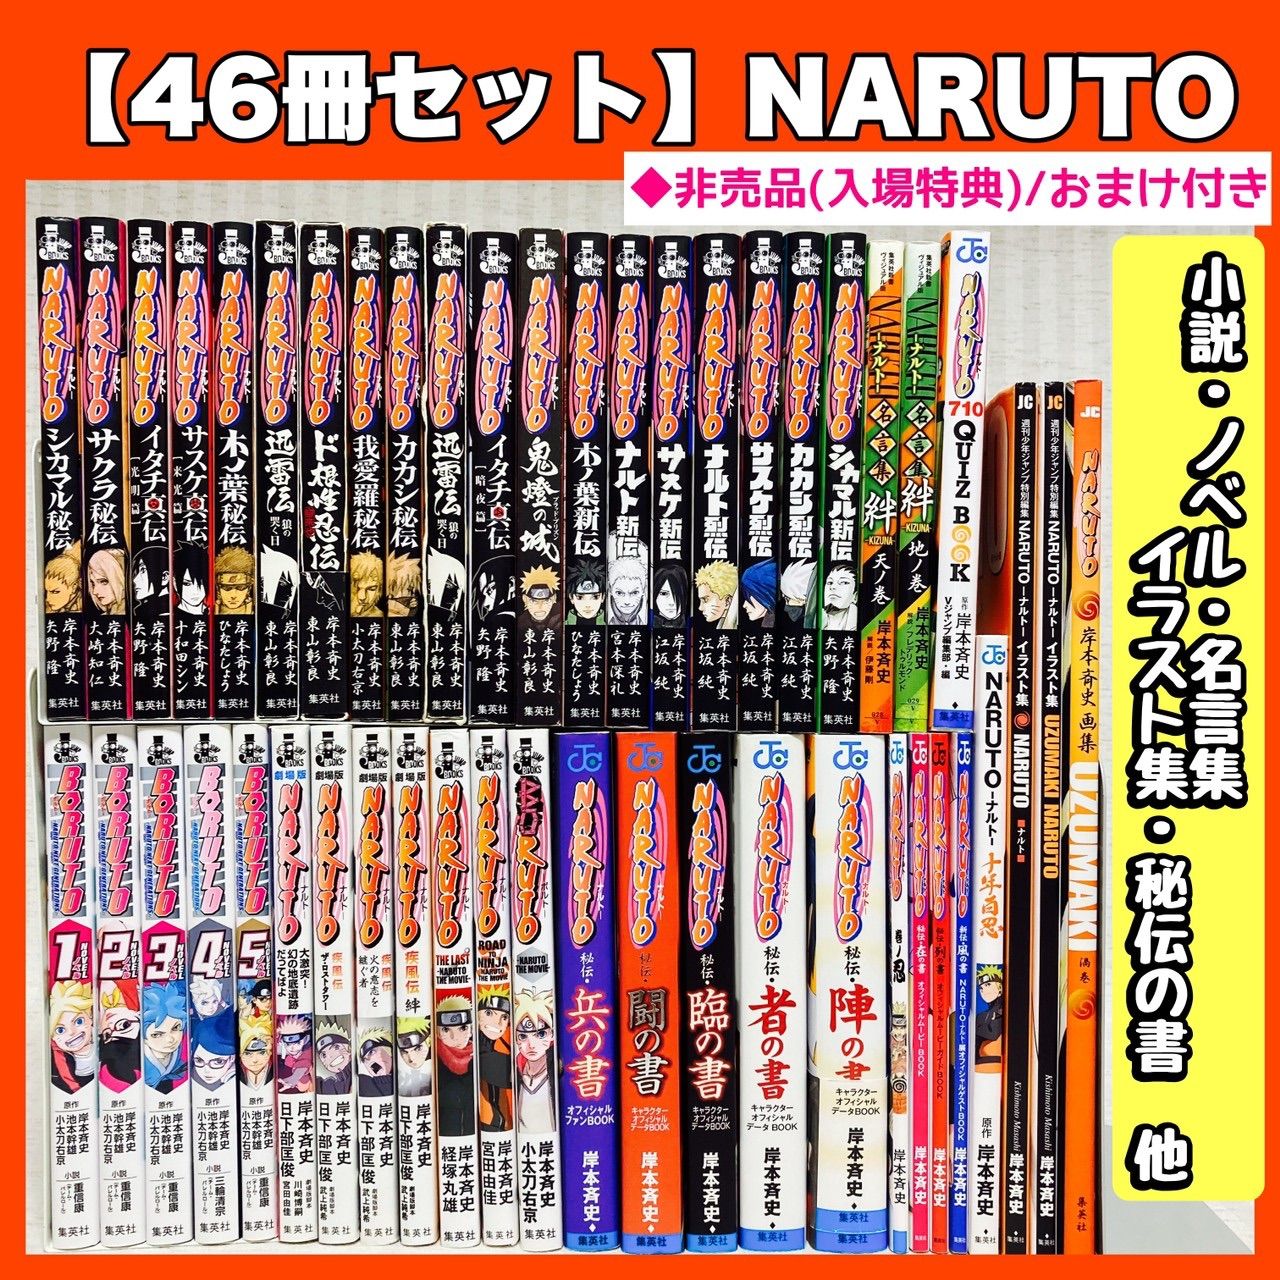 NARUTO ナルト 小説 46冊セット 秘伝 新伝 烈伝 名言集 絆 ボルト-